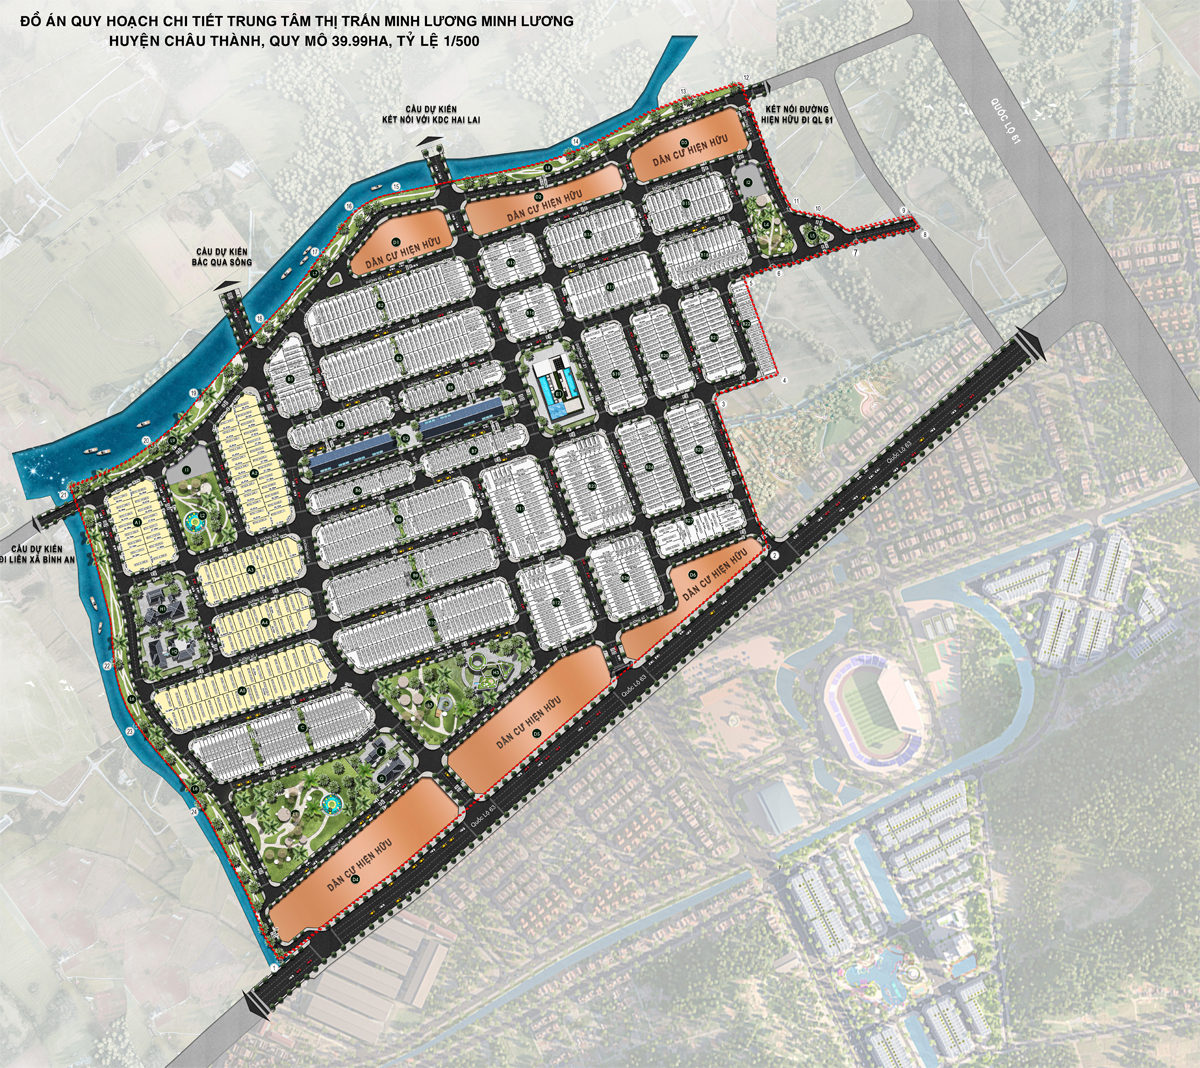 Bản đồ Quy hoạch Trung tâm Thị Trấn Minh Lương